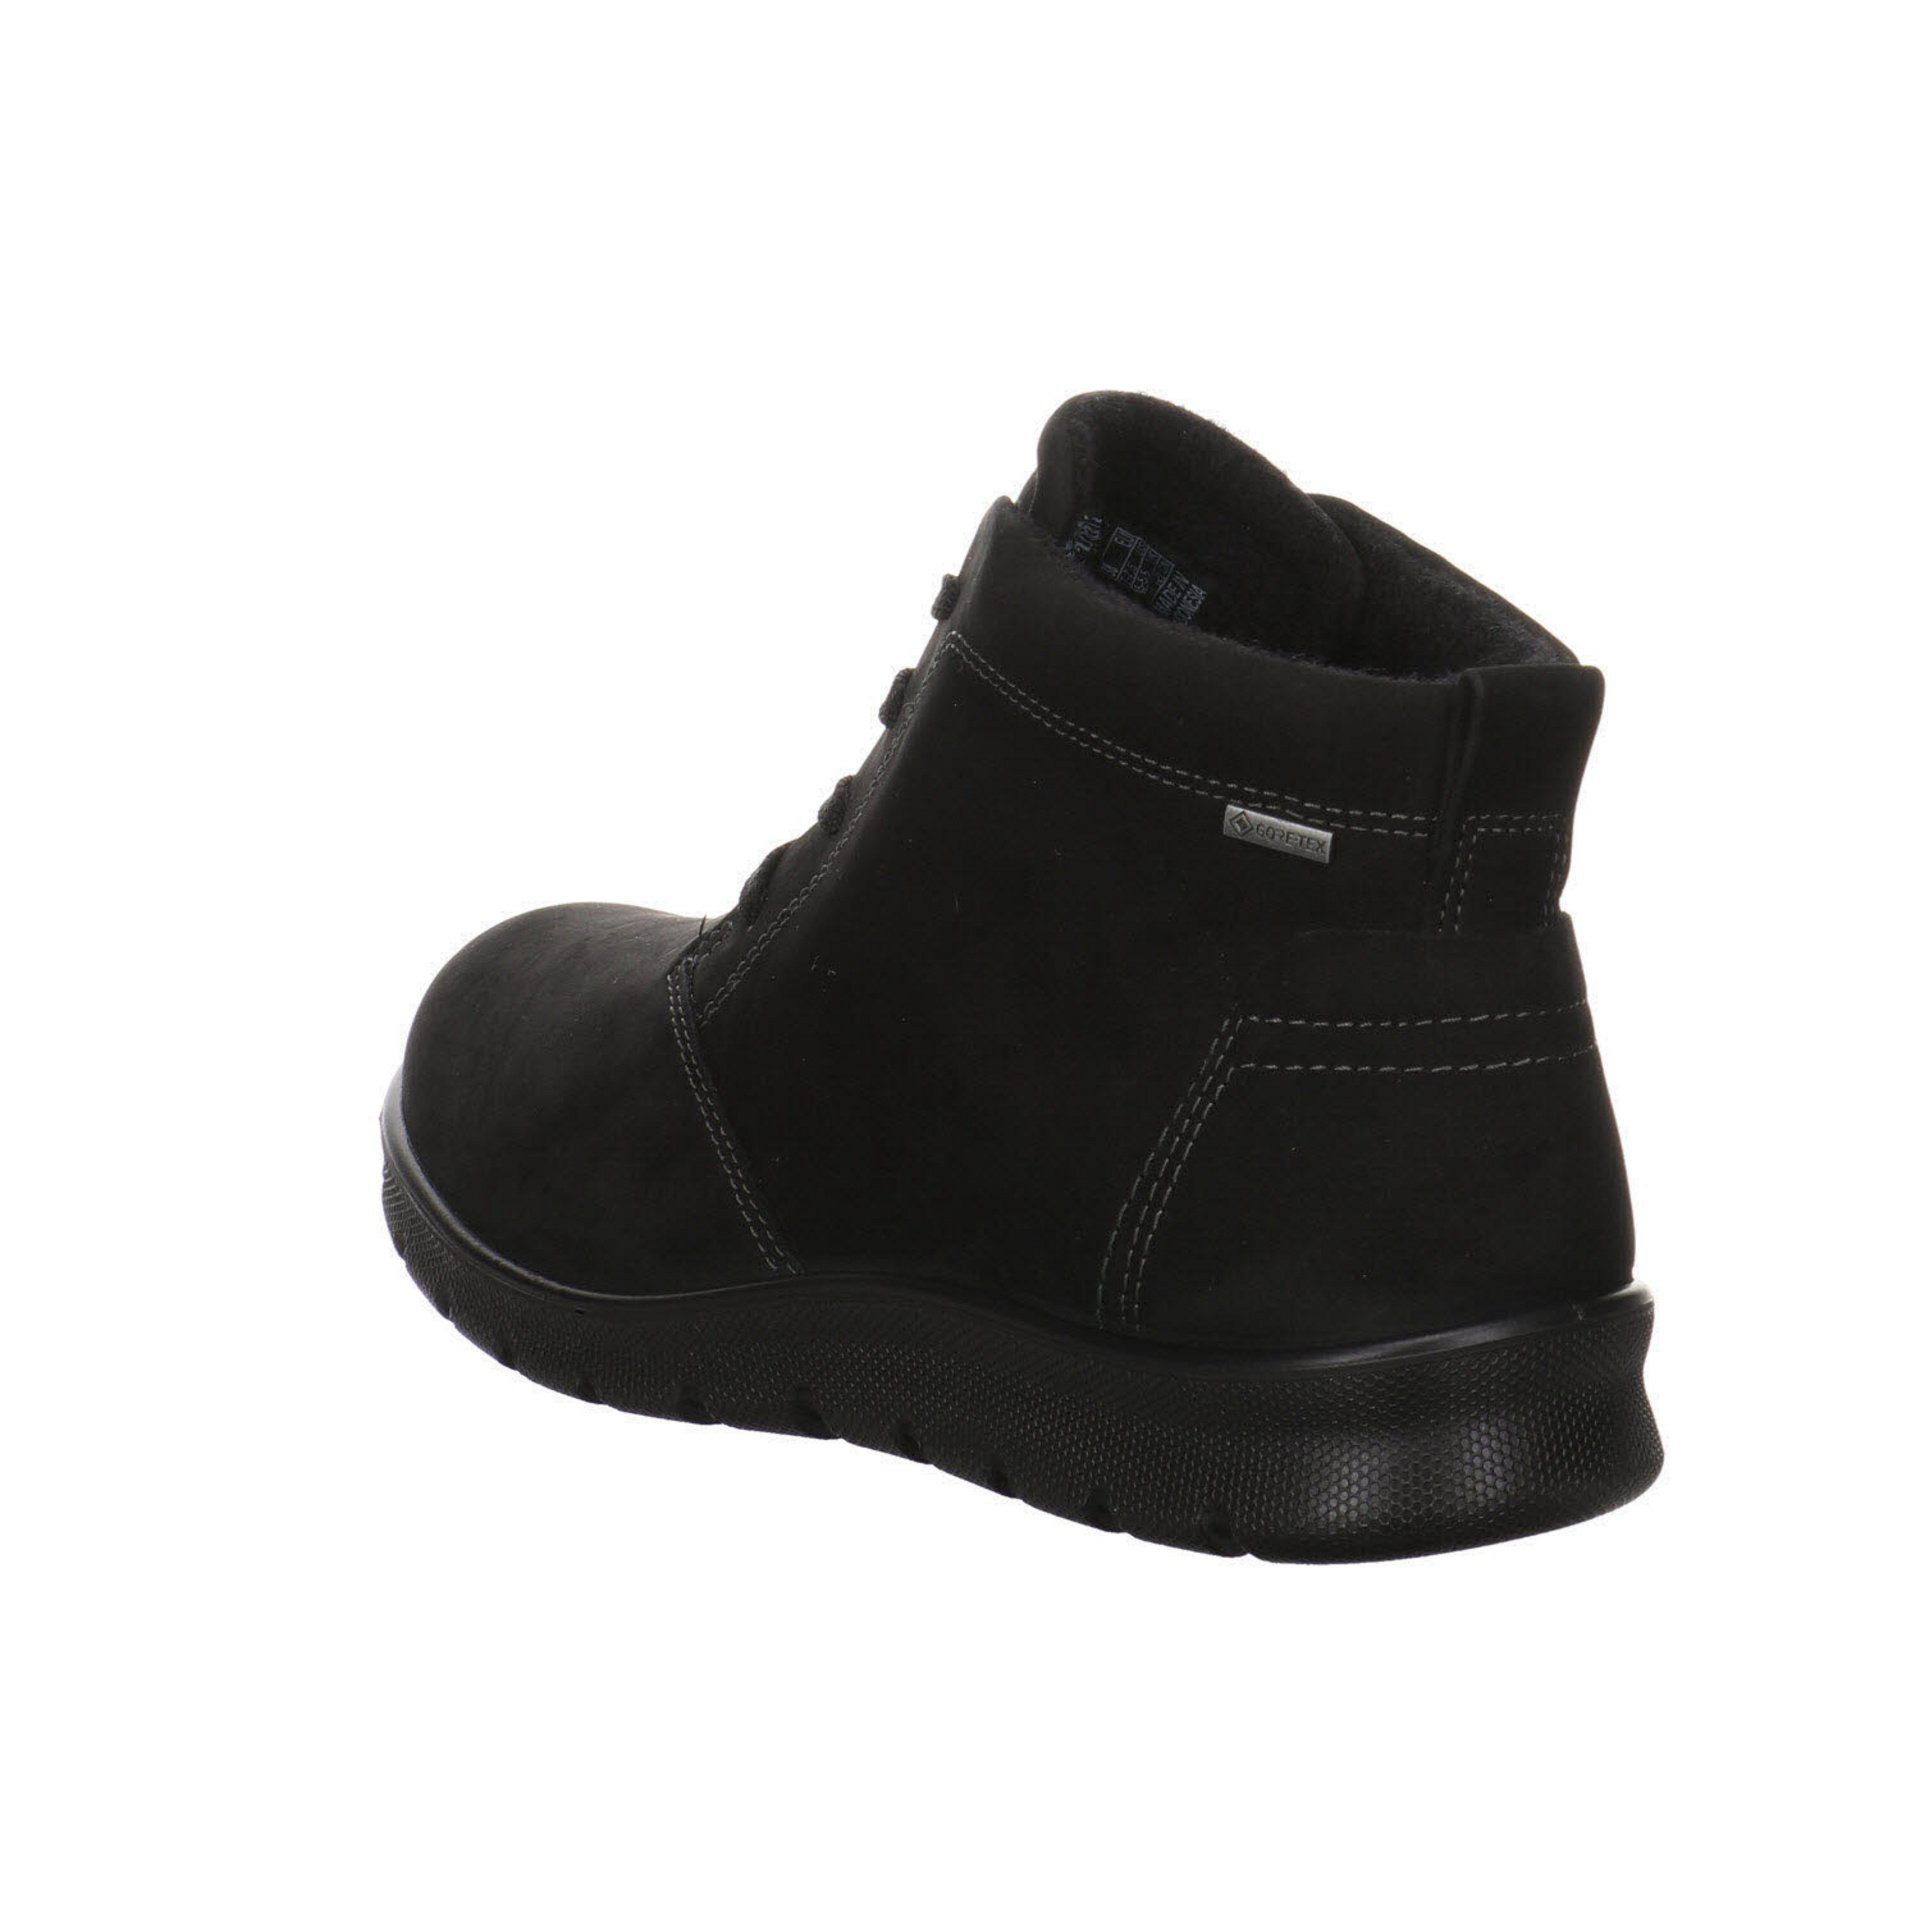 Stiefeletten black Ecco Schnürstiefelette Schuhe Boots Babett Damen Nubukleder